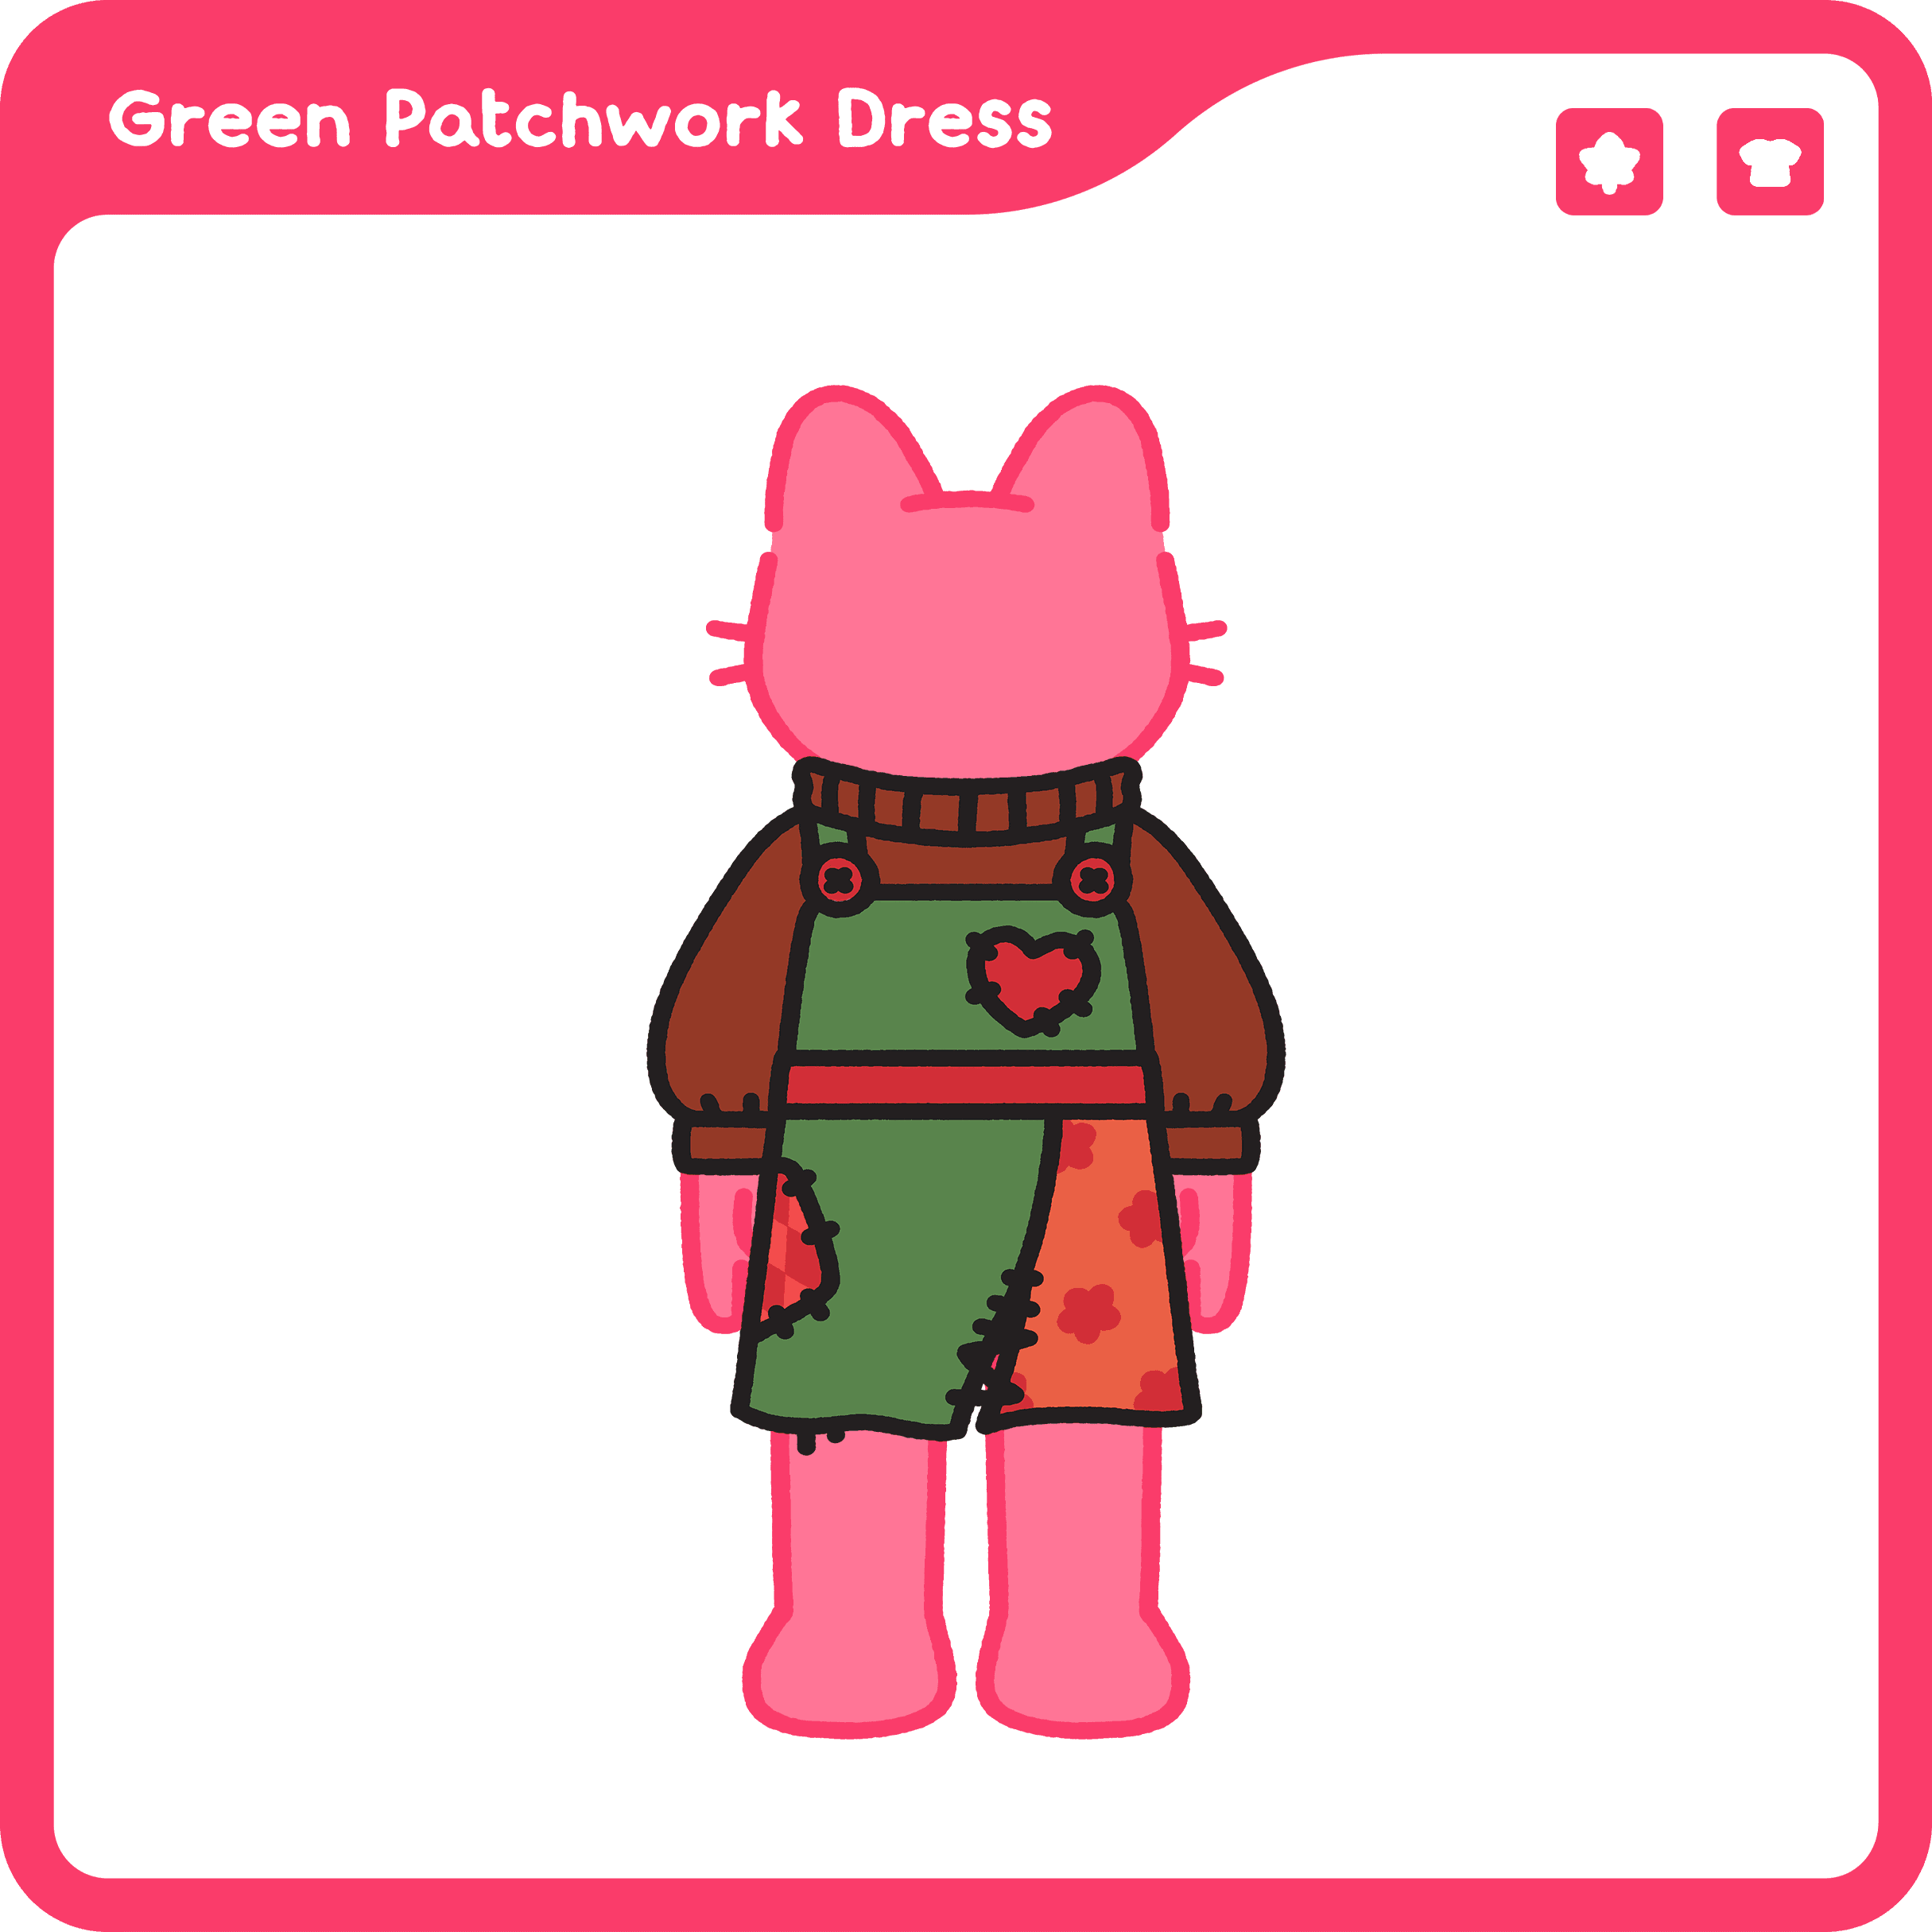 Green Patchwork Dress